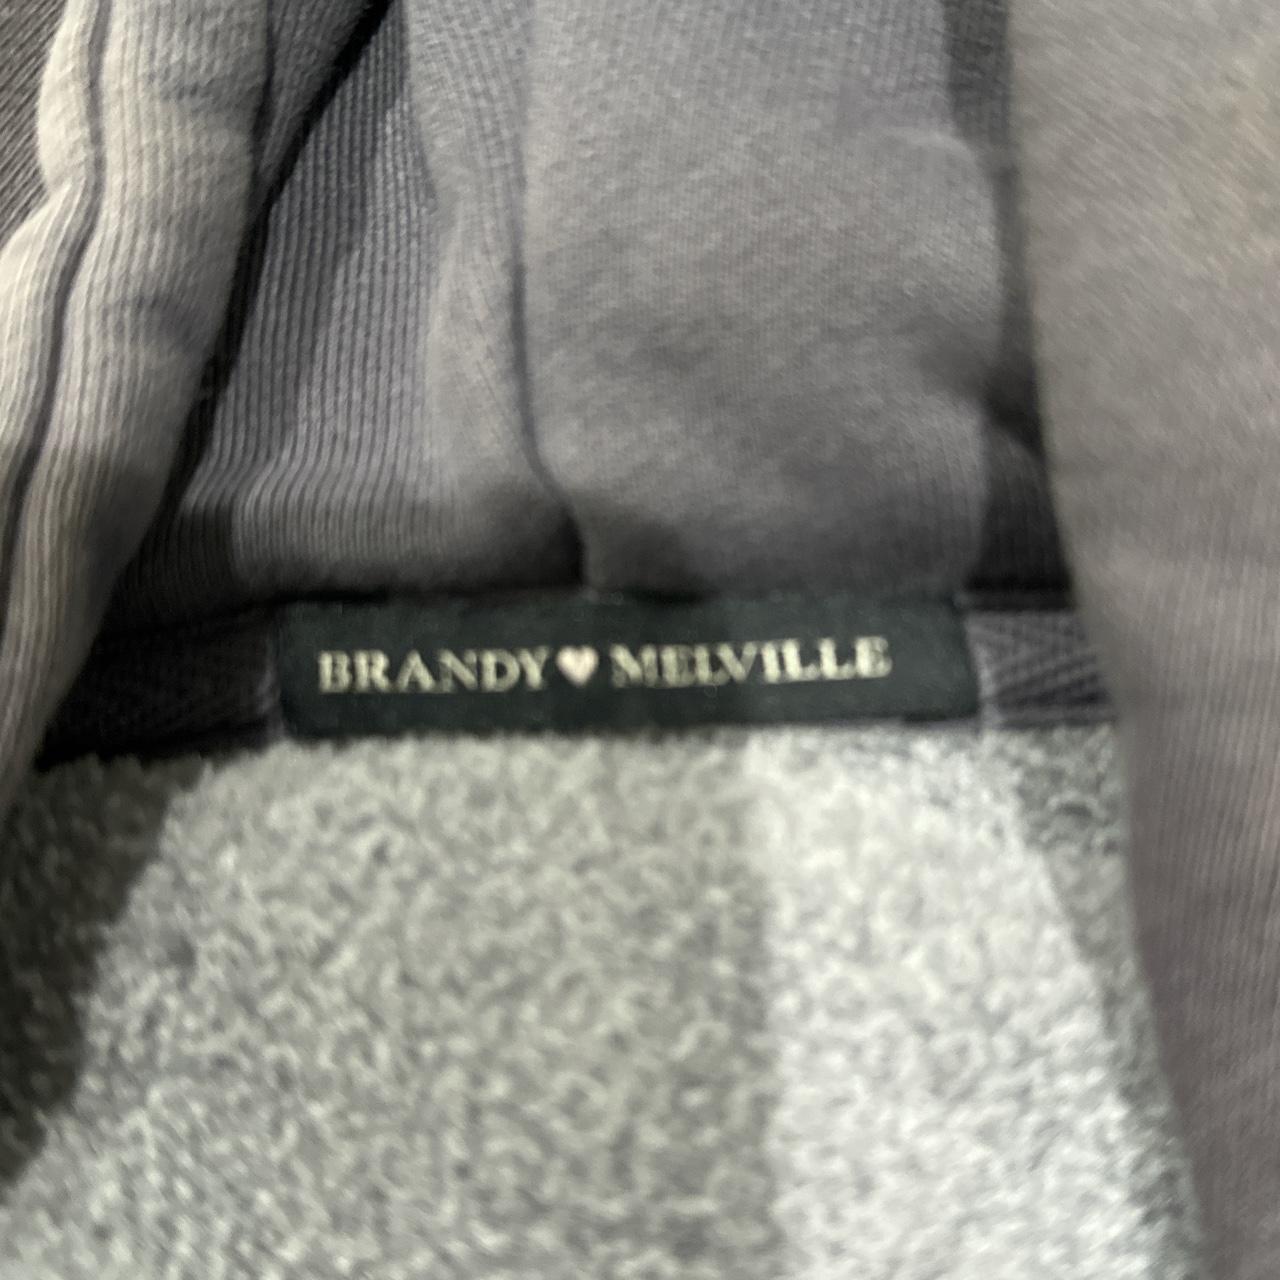 Brandy Melville Zip Up Sweatshirt NEVER WORN but... - Depop